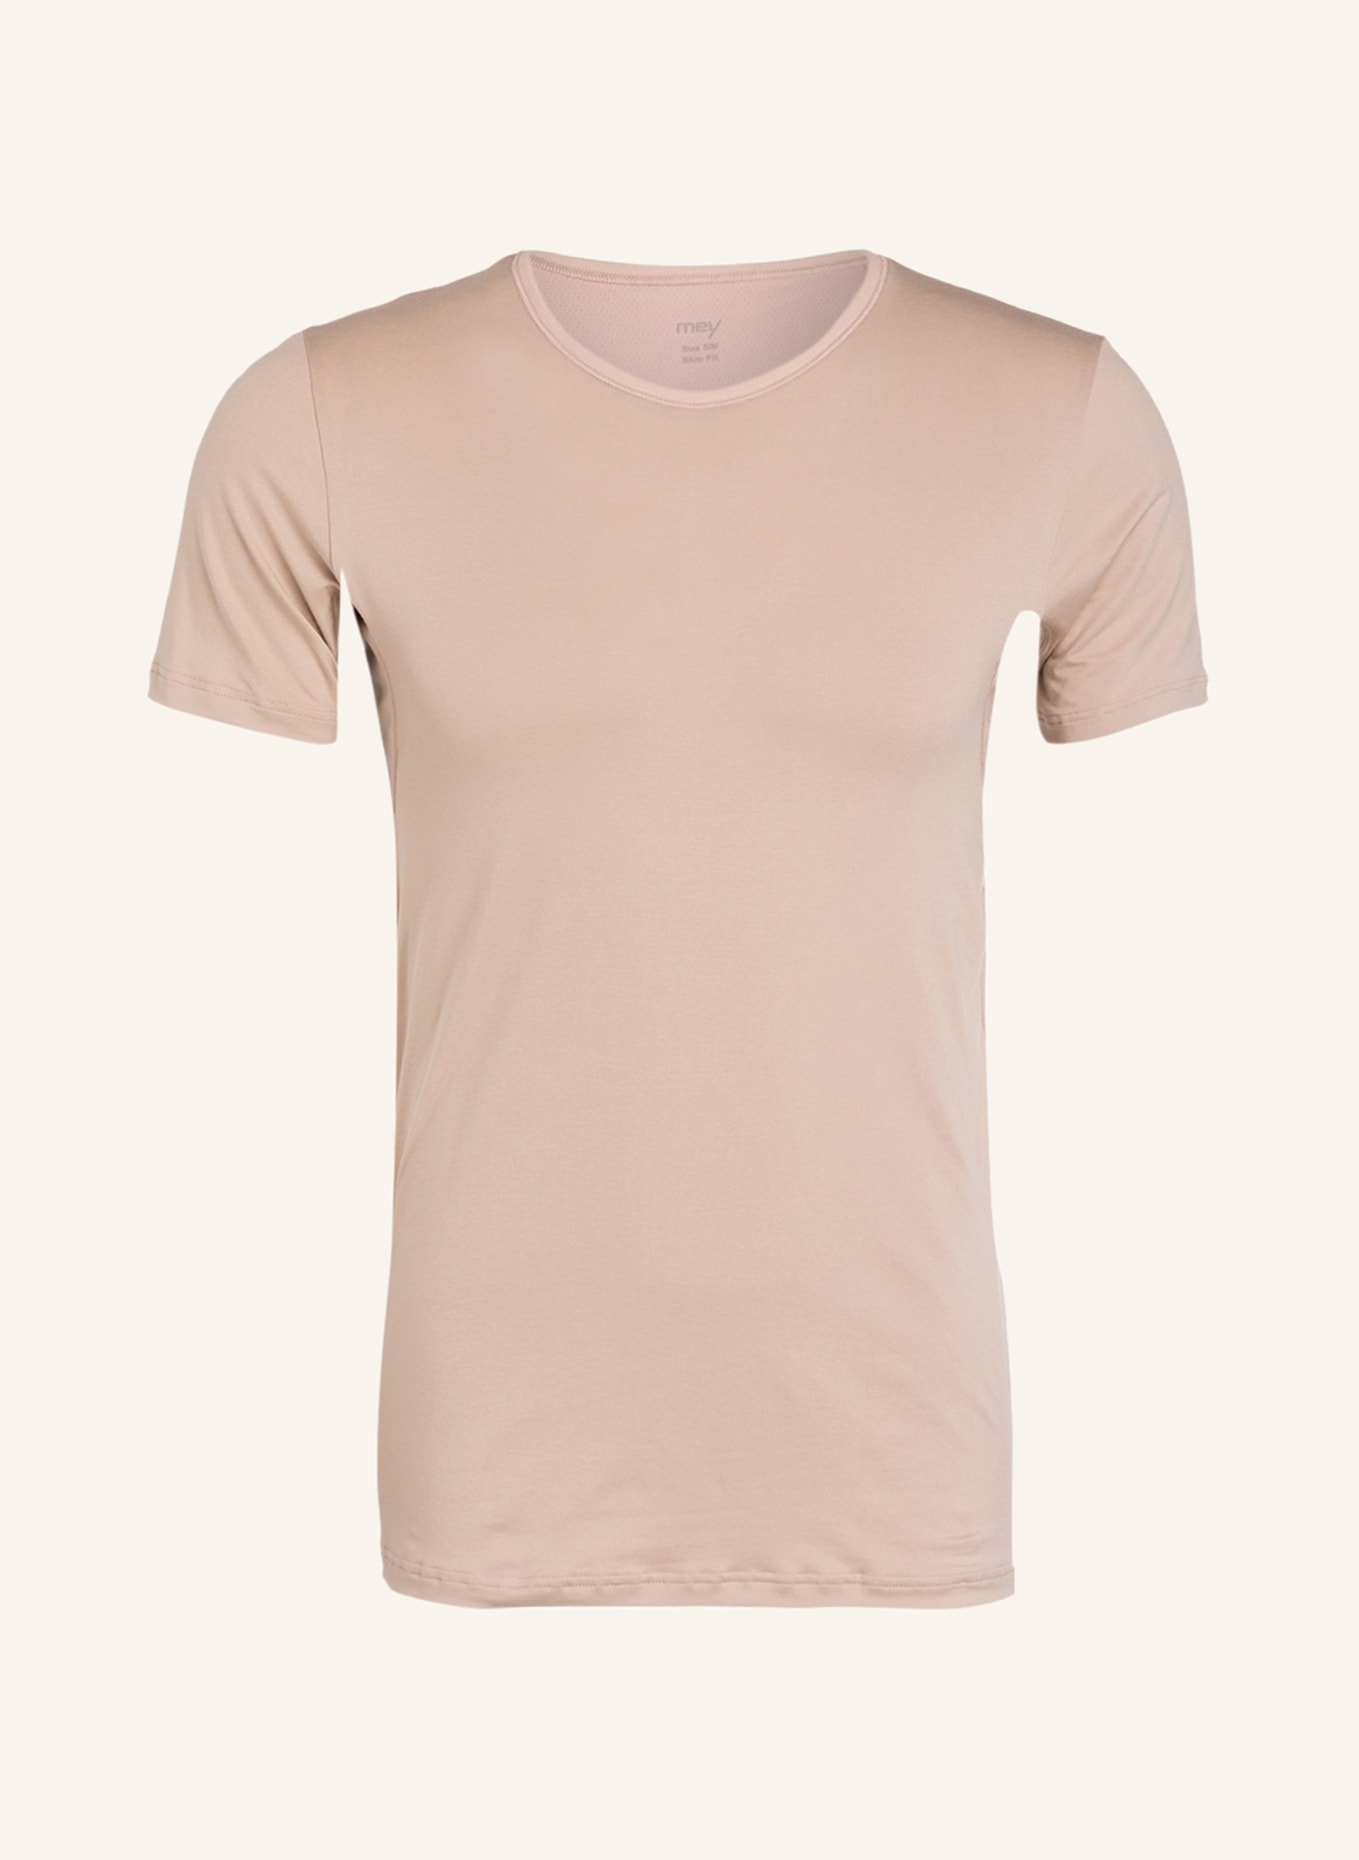 mey T-Shirt, Farbe: BEIGE (Bild 1)